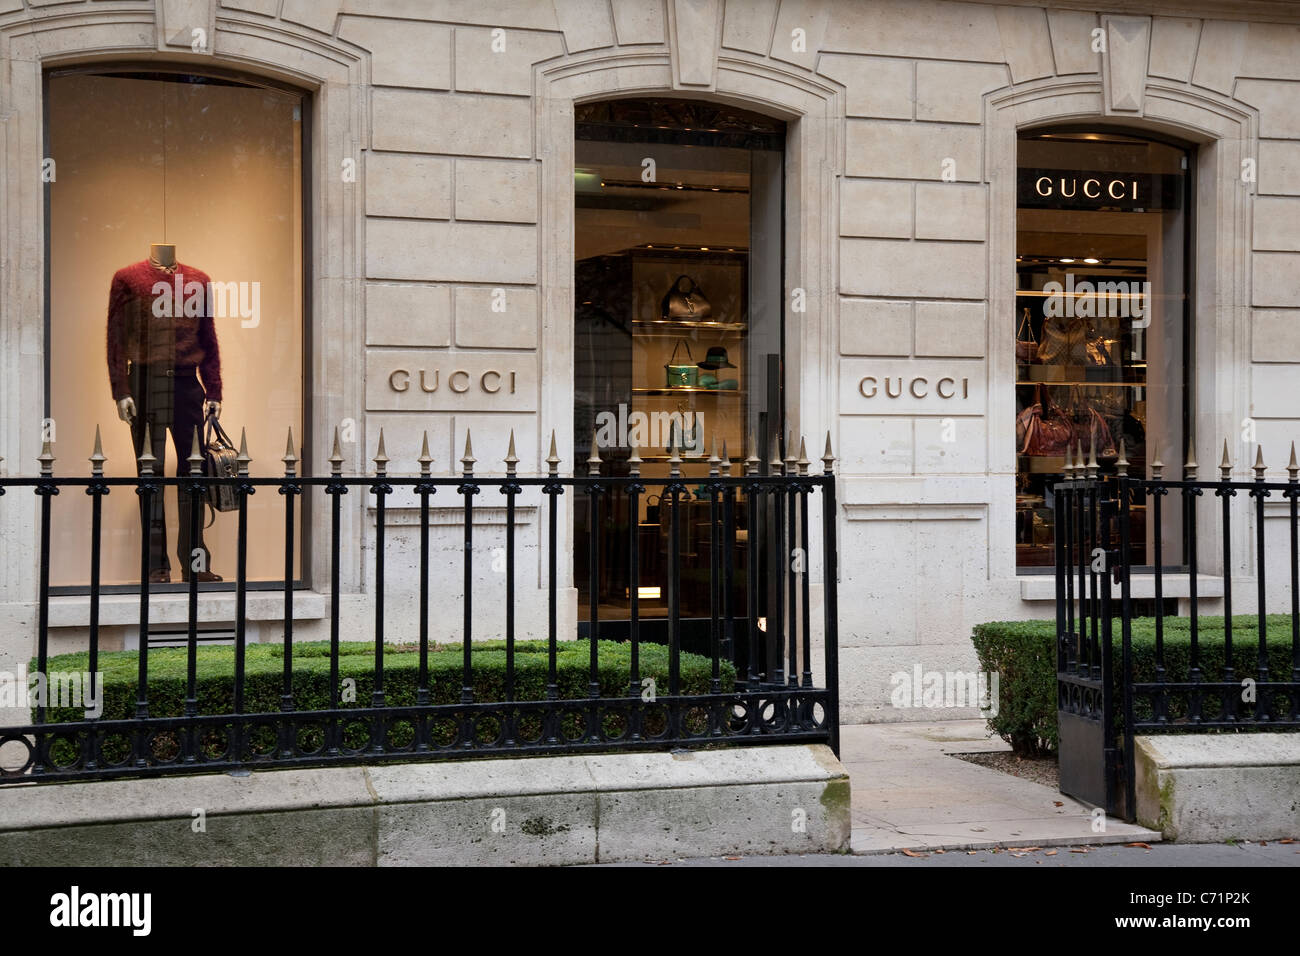 Heerlijk Terug kijken Obsessie Gucci shop hi-res stock photography and images - Alamy